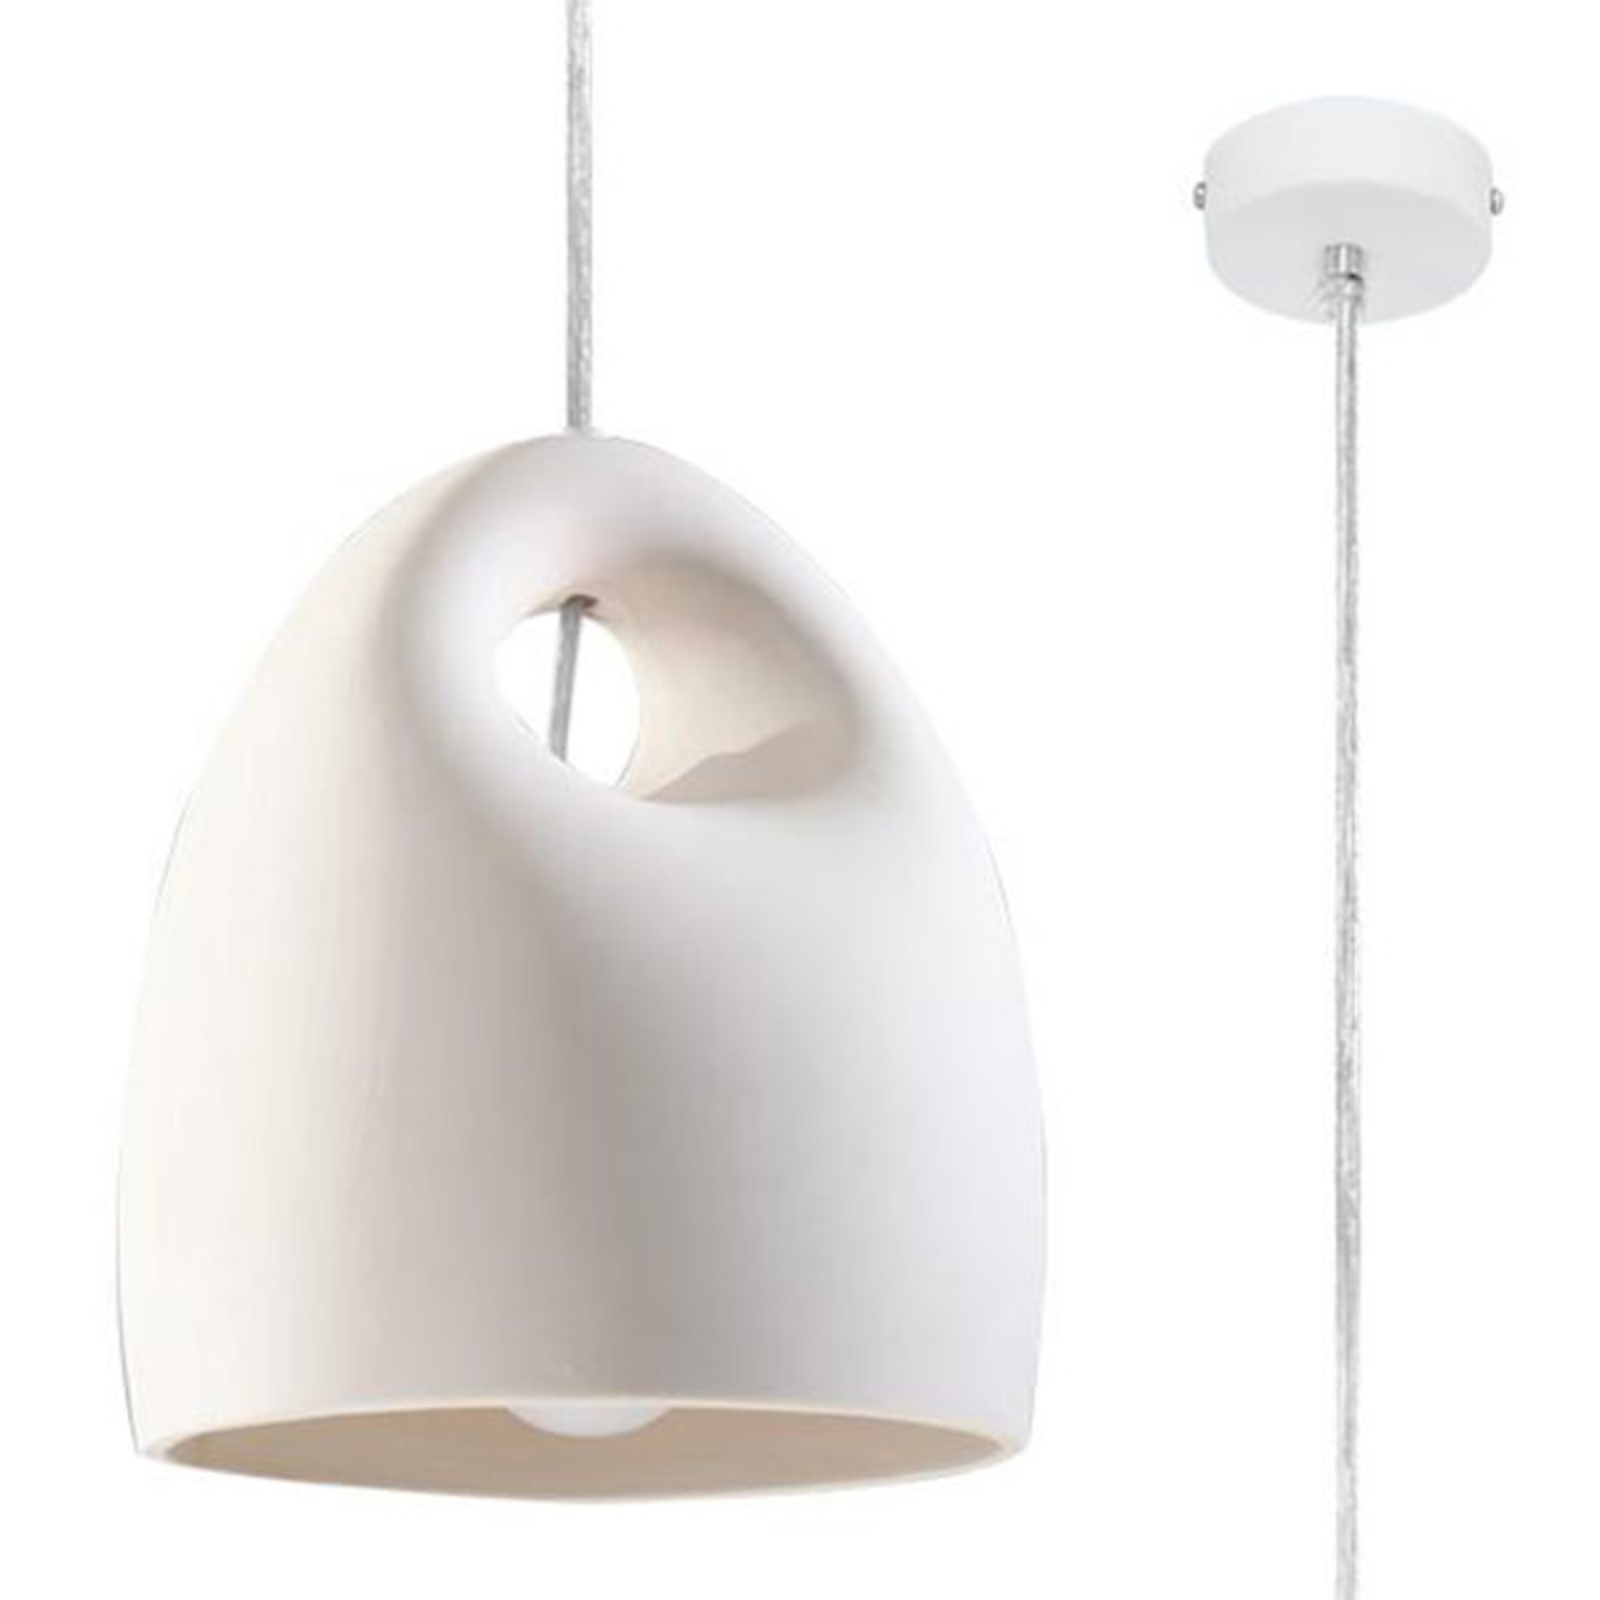 Hanglamp met witte keramische kap Lampen24.be